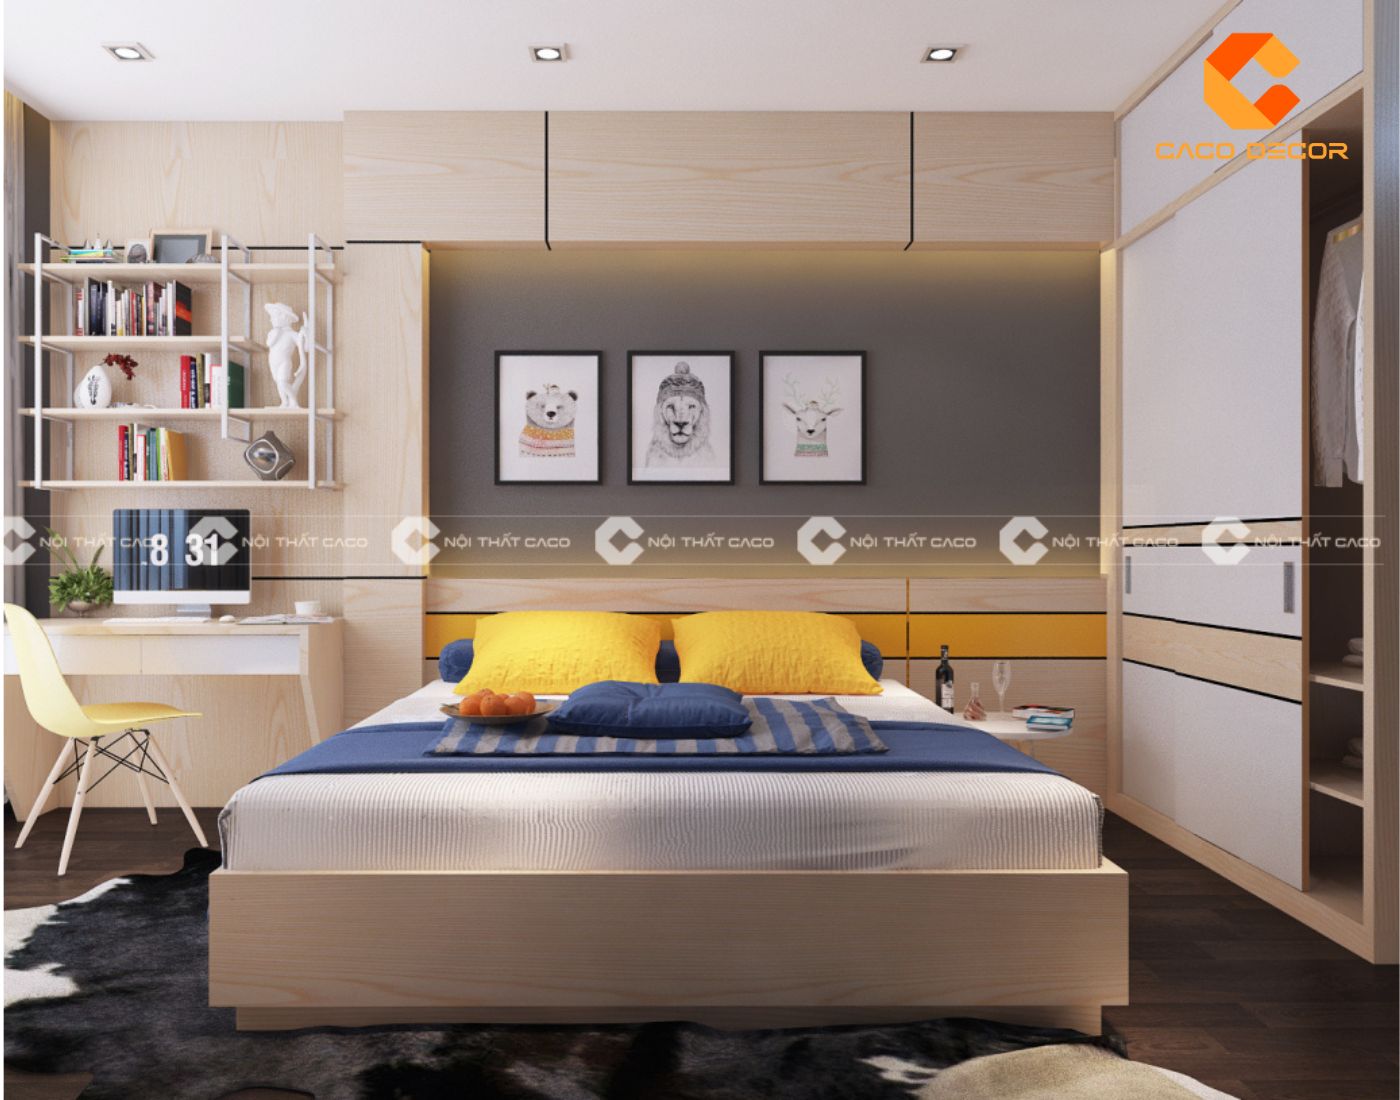 Combo phòng ngủ giá rẻ TPHCM - Miễn phí thiết kế theo yêu cầu 12